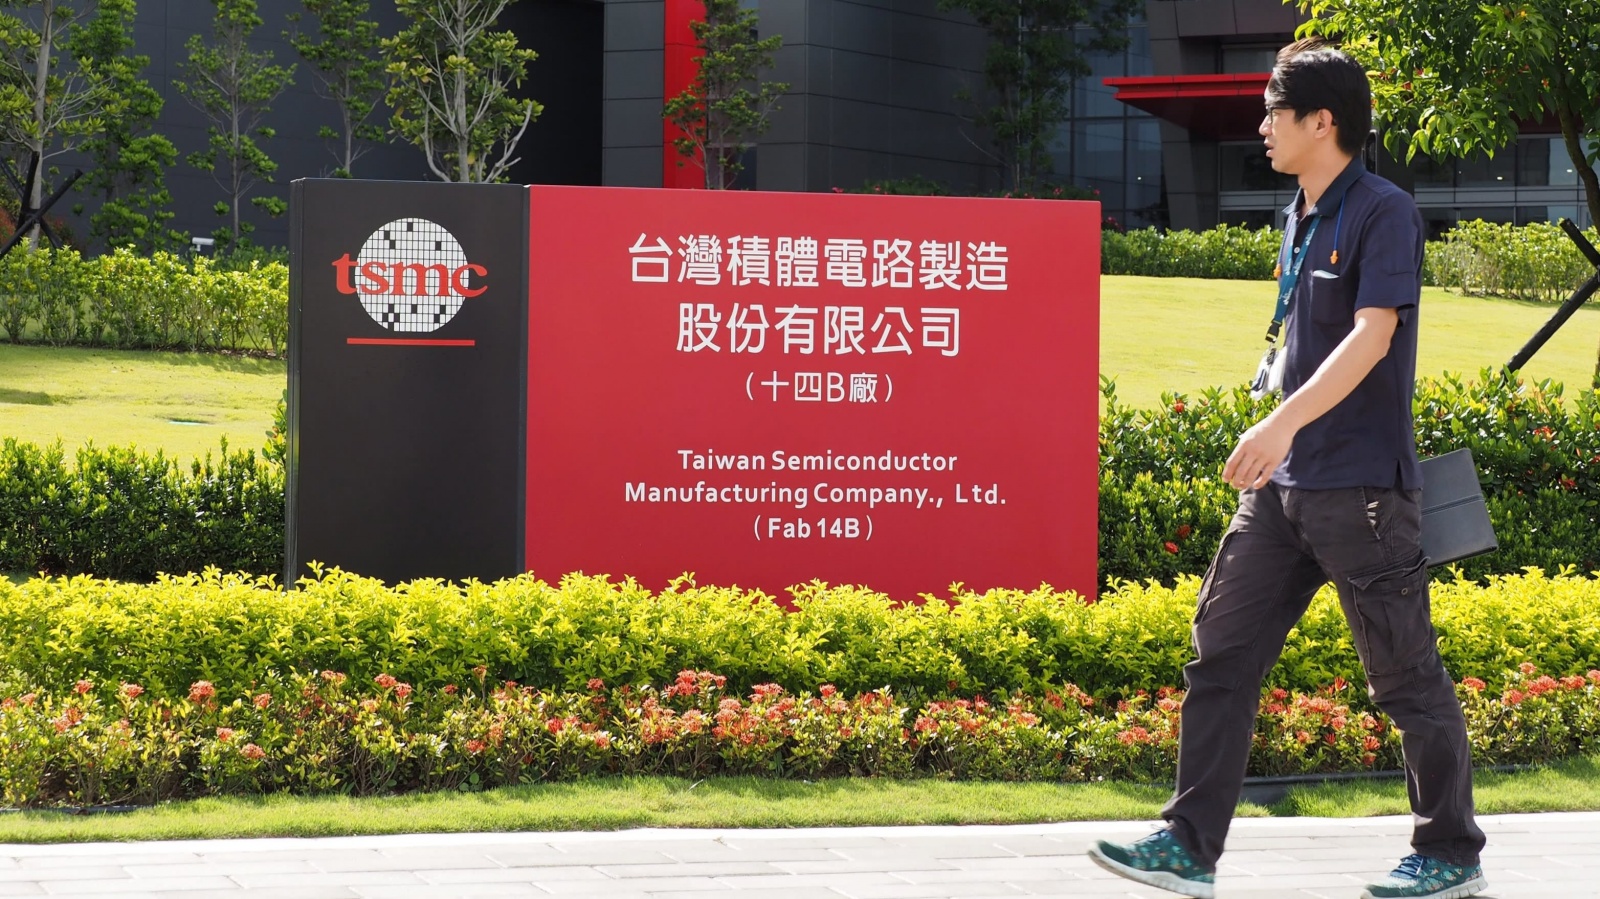 Китай инвестирует $1,4 трлн долларов и переманивает ключевых инженеров TSMC, стремясь обогнать США в производстве чипов - 2